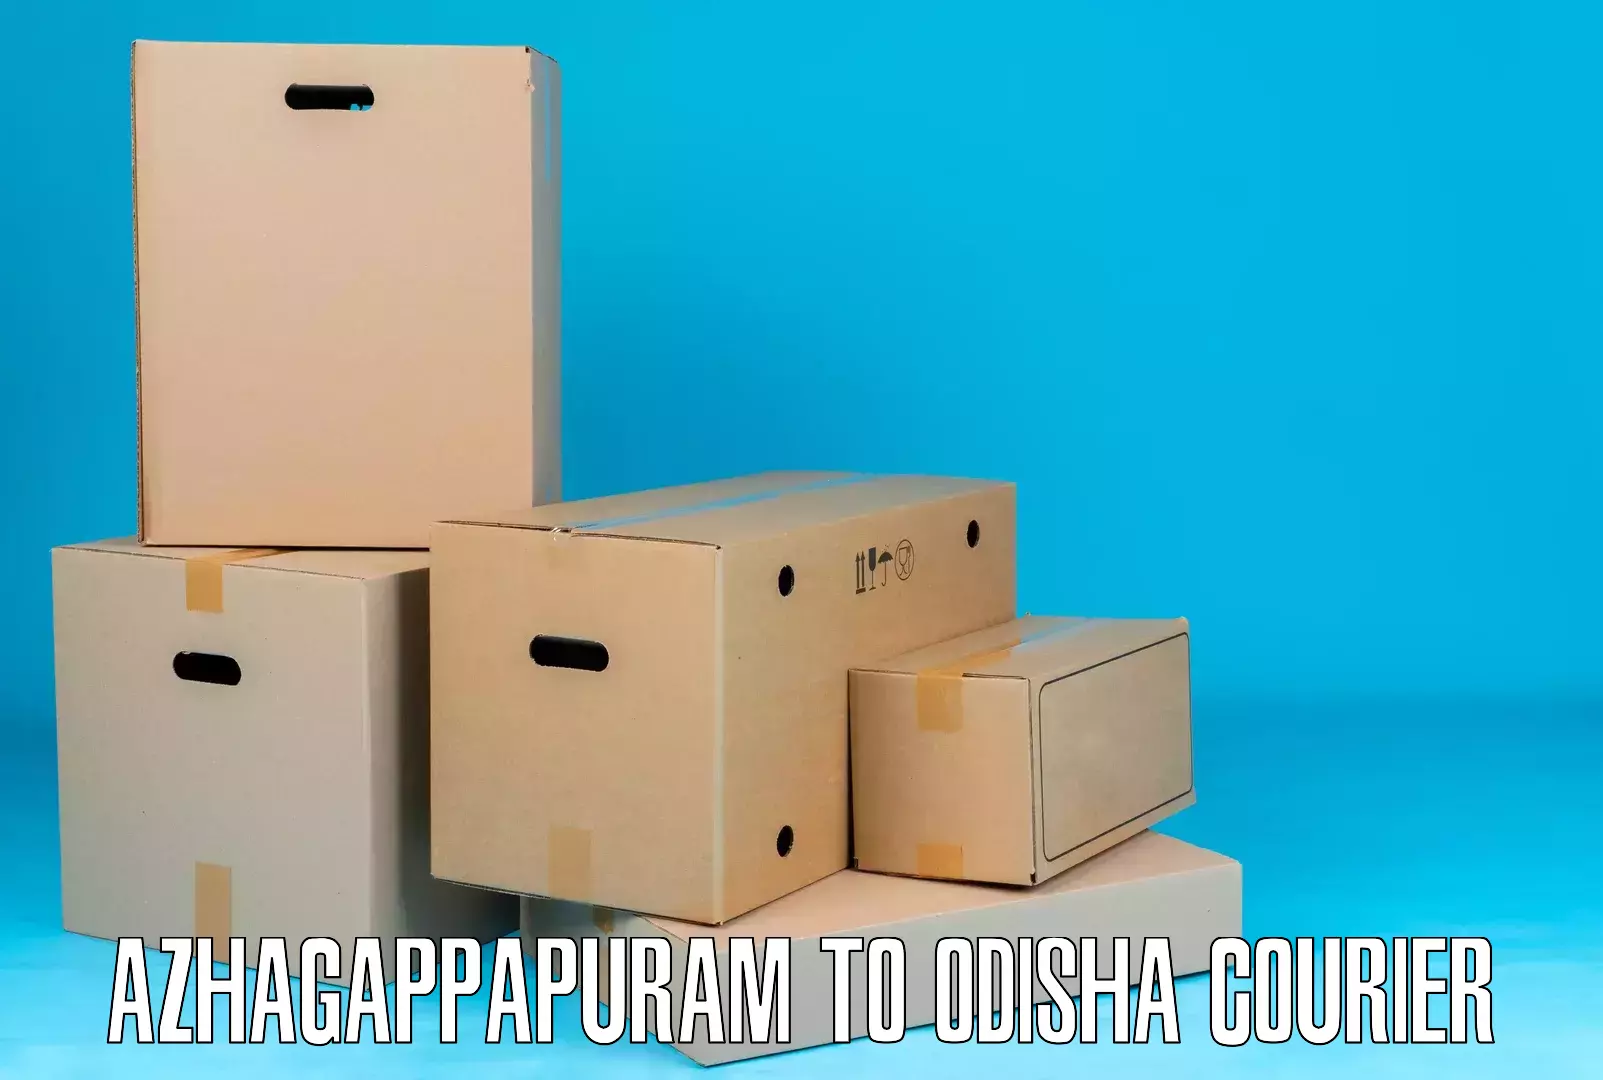 Next-day delivery options Azhagappapuram to Patnagarh